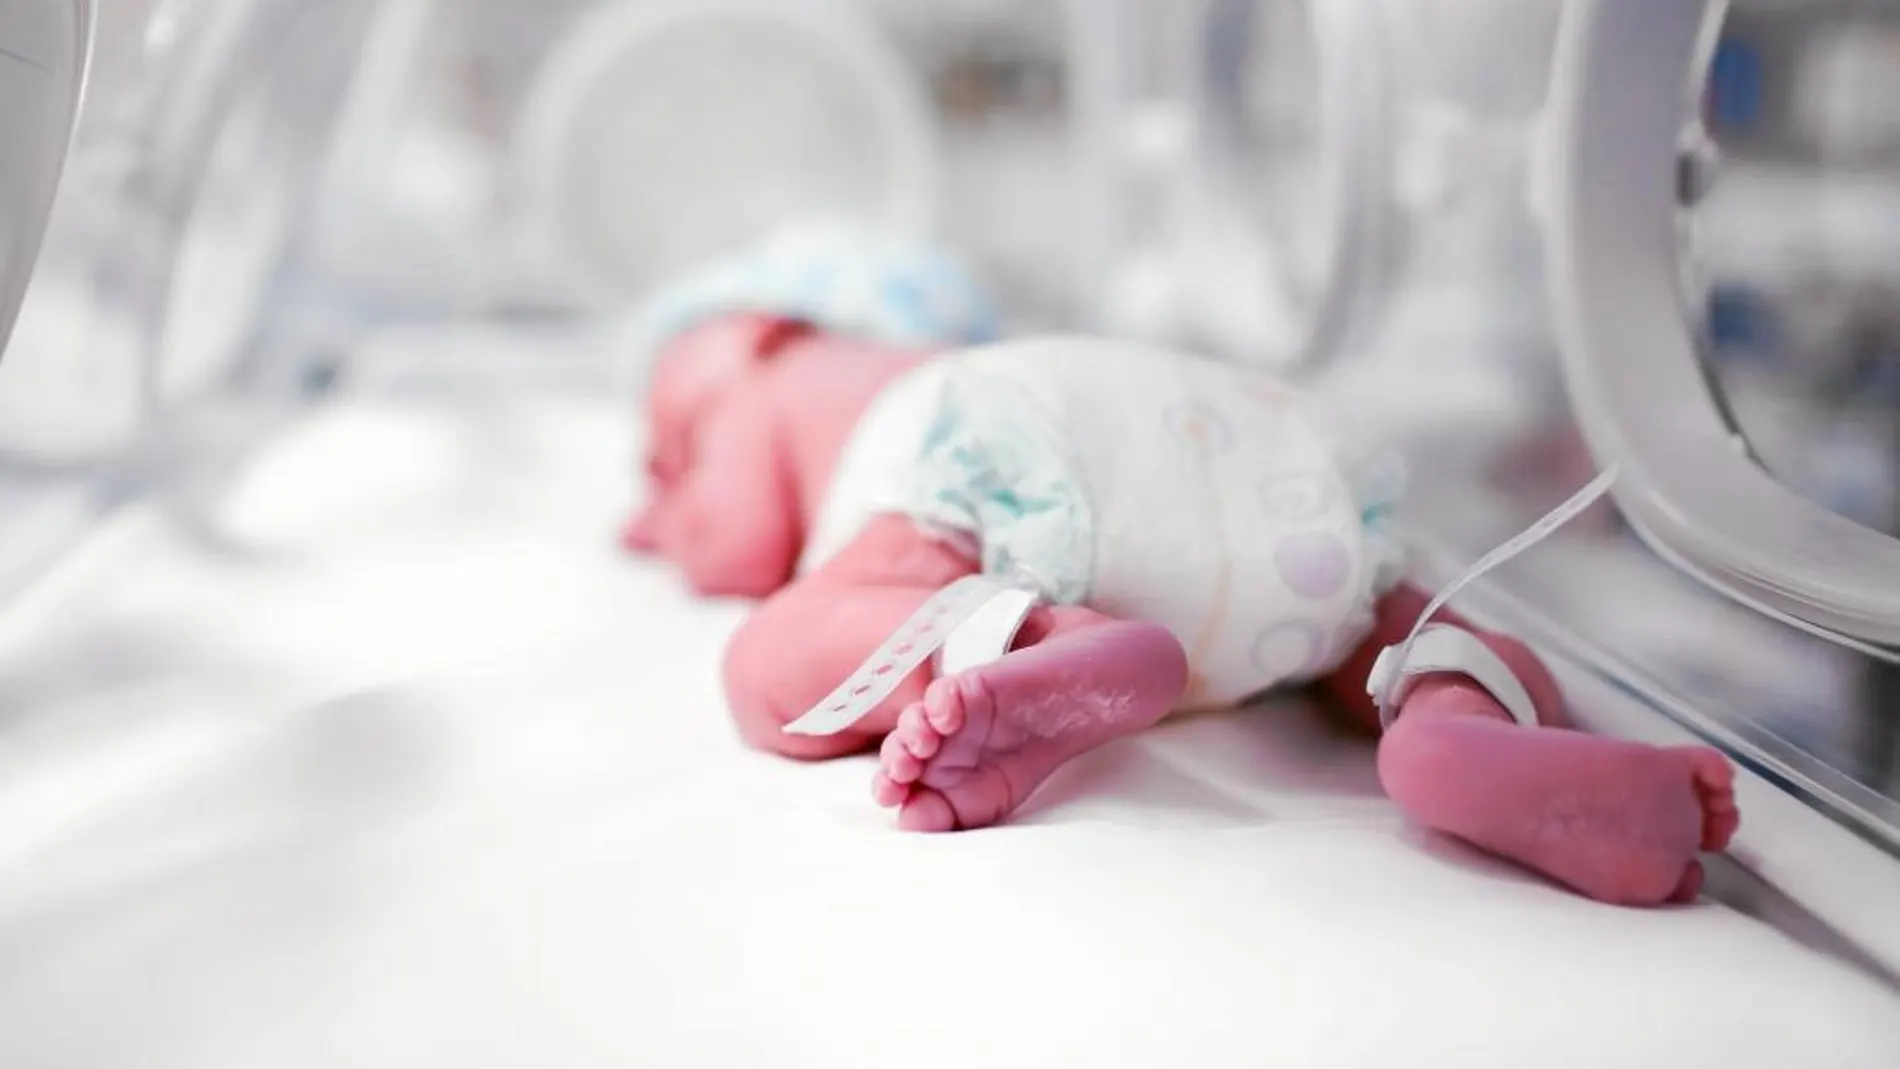 En España nacen cada año 30.000 bebés prematuros, cada vez más porque aumenta la edad de la madre y mejora la ciencia y tecnología